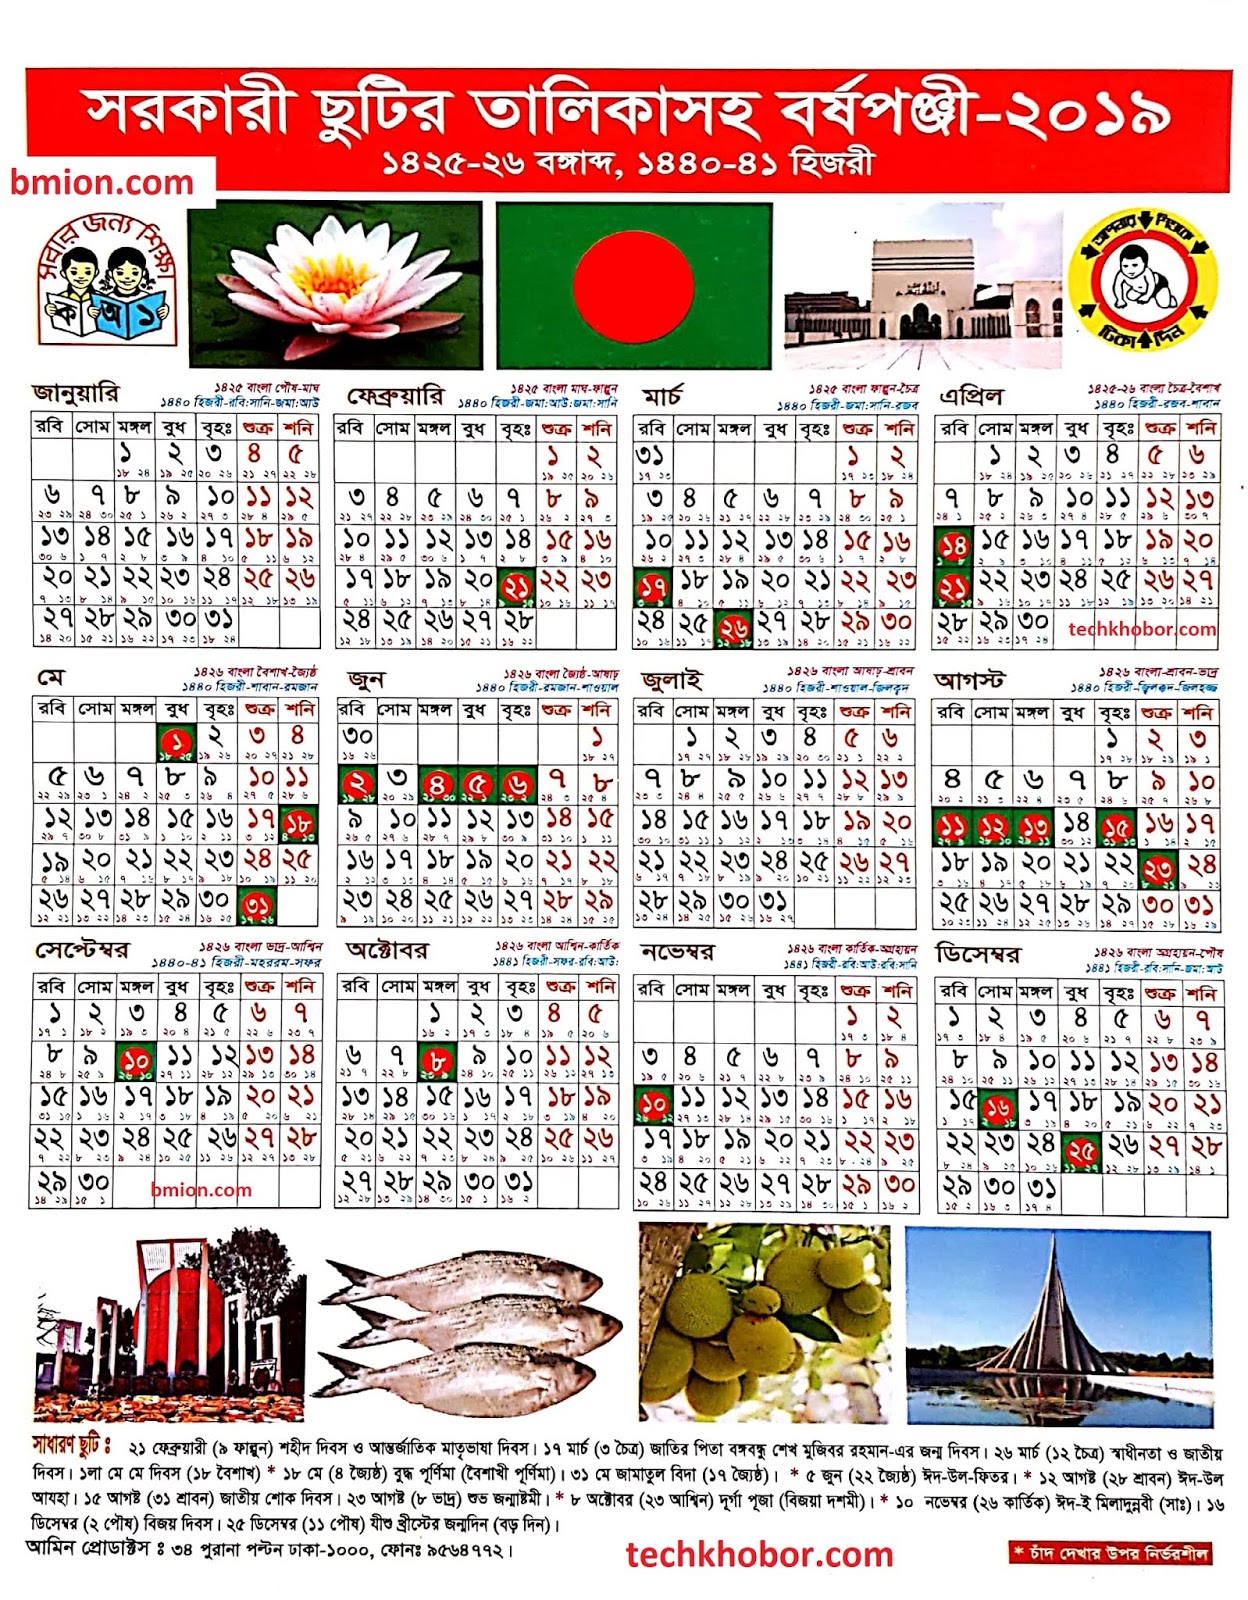 Bangladesh Publicgovernment Holidays 2019 । Bangla Calender 2019